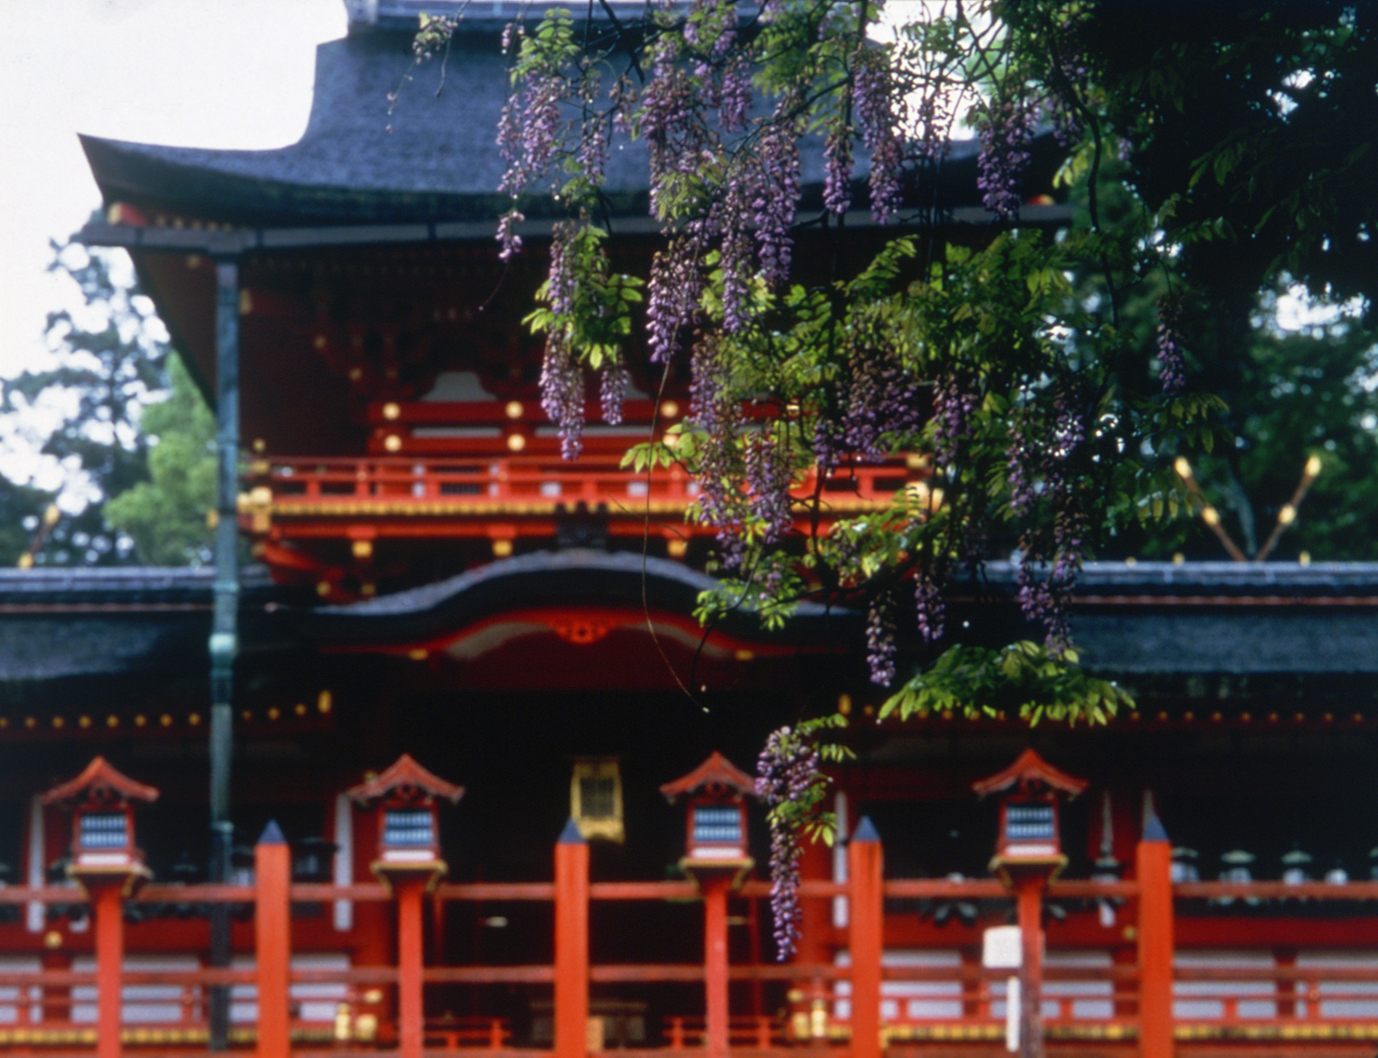 Sede de aproximadamente 3000 santuarios Kasuga en todo el país
Foto cortesía de la Oficina de Visitantes de Nara